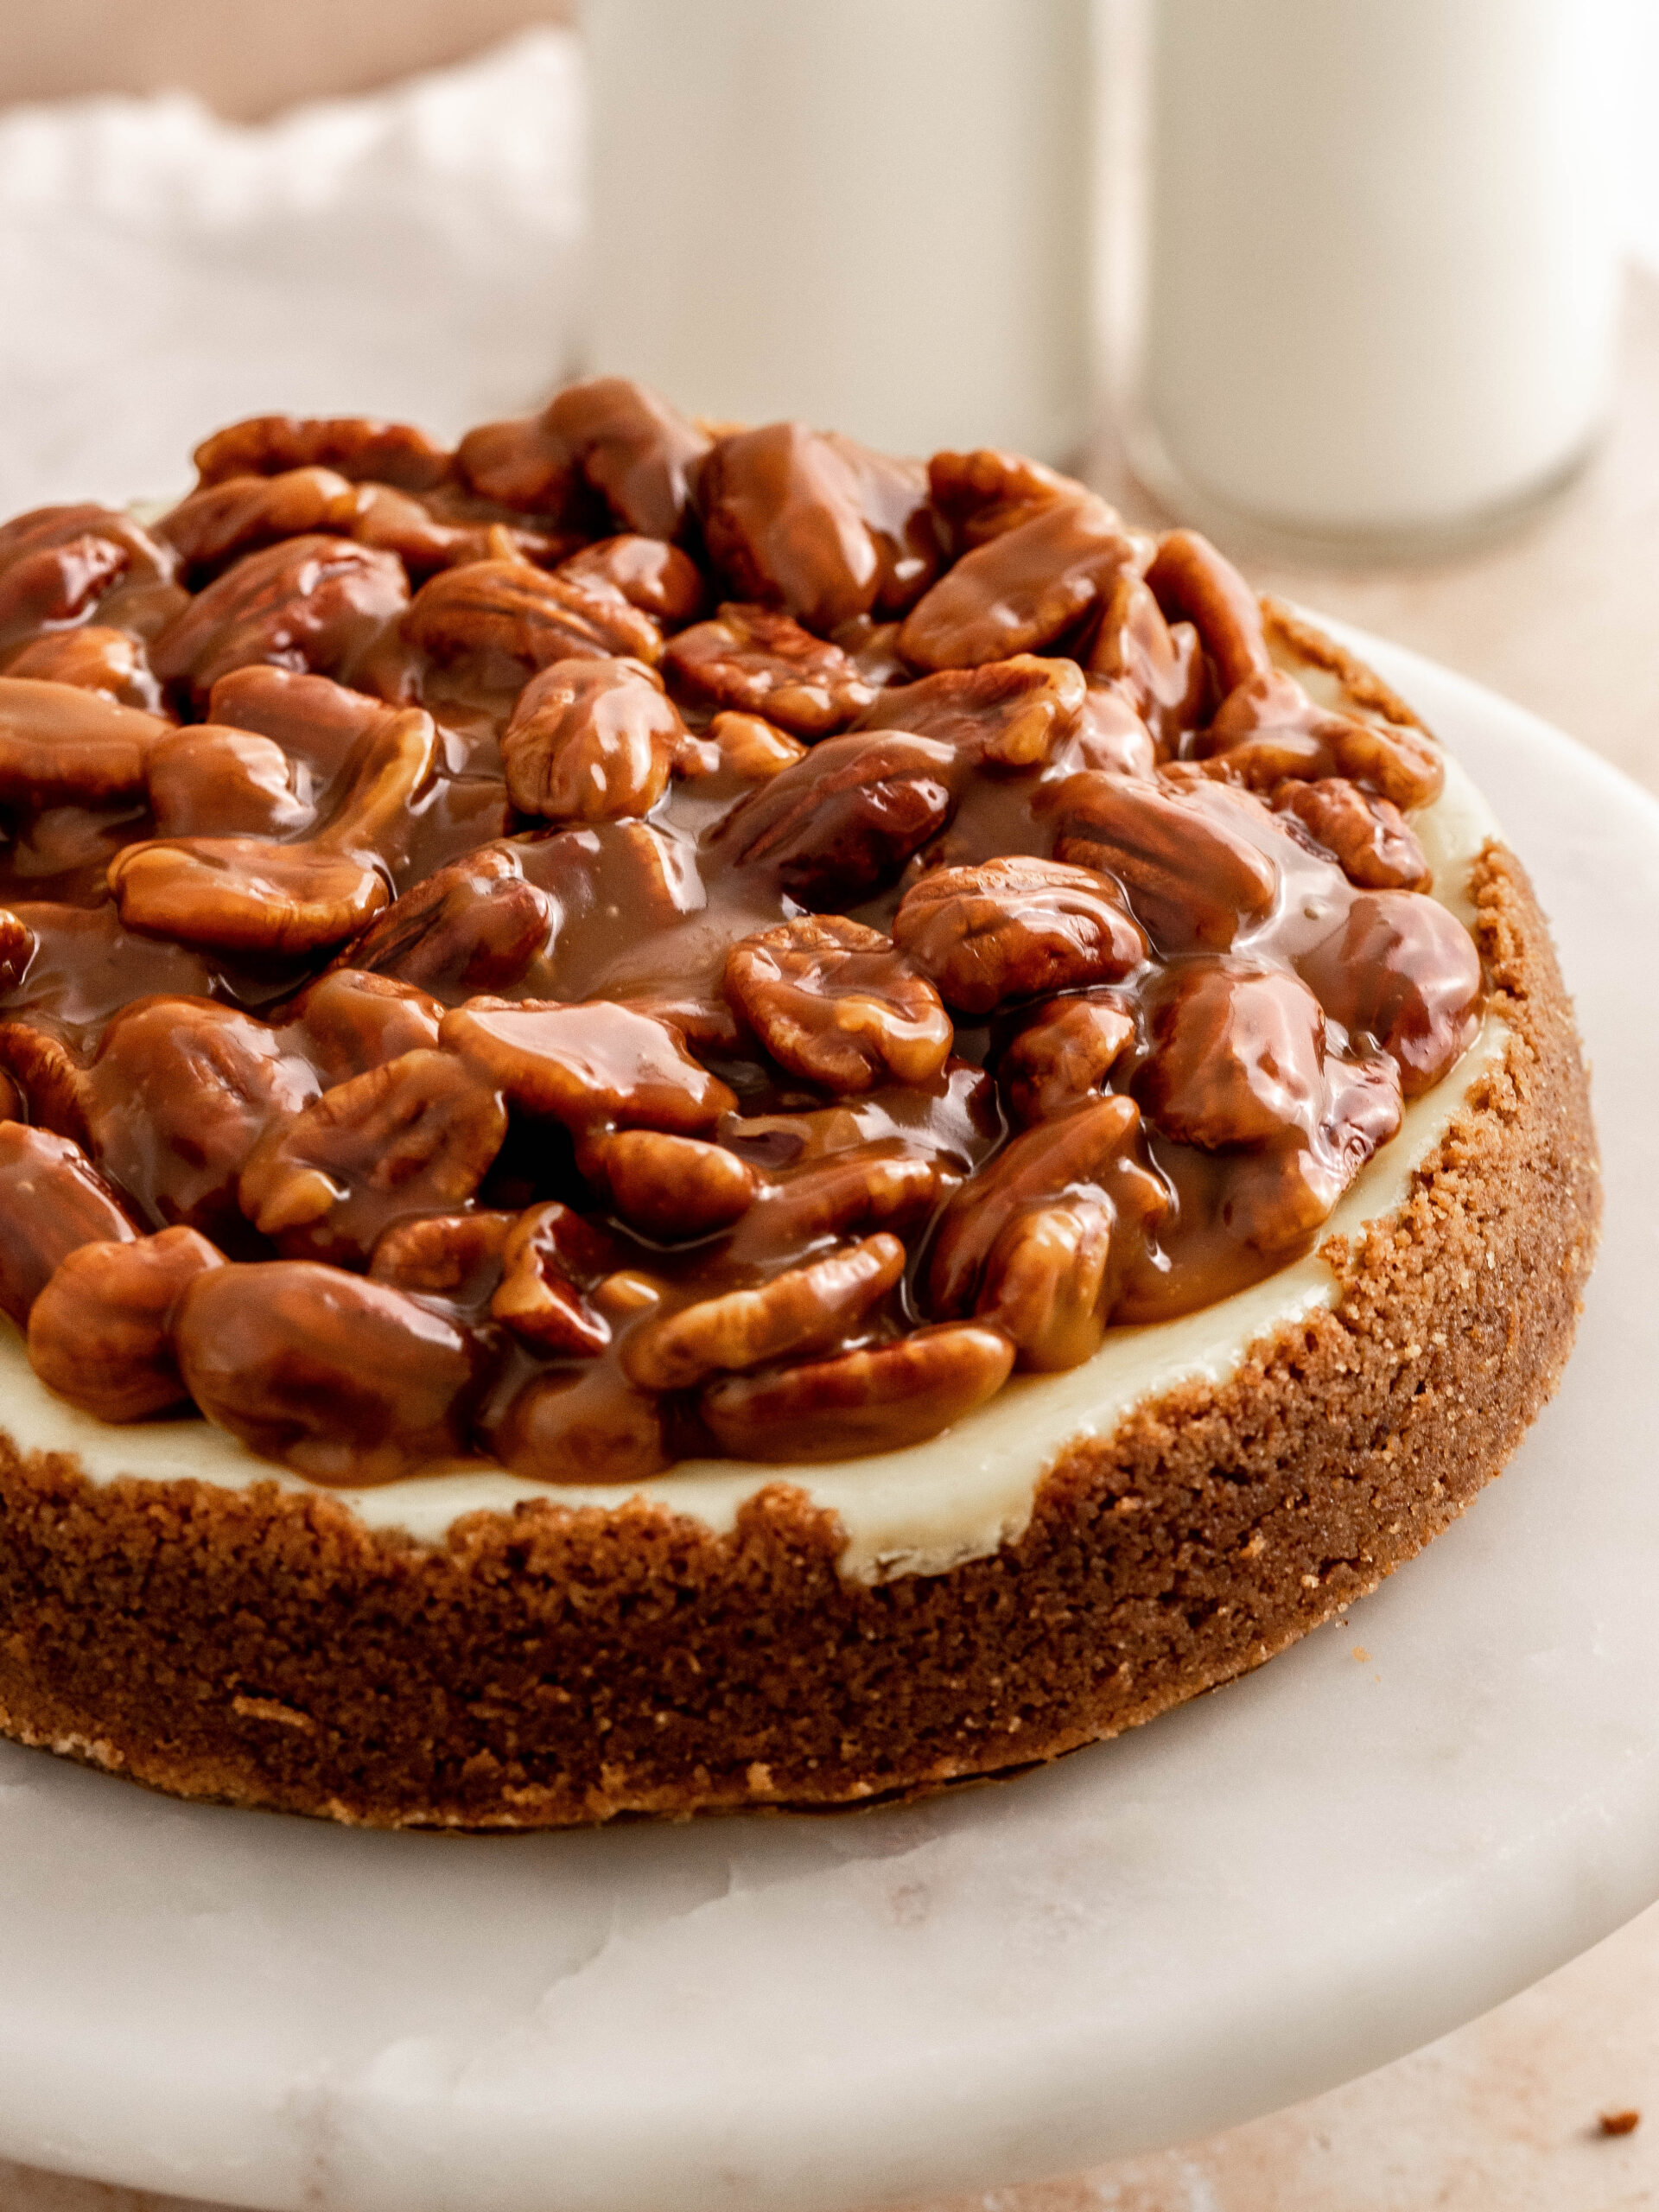 Trin 8. Kom karamel og pekannødder på toppen af cheesecaken, og nyd den.